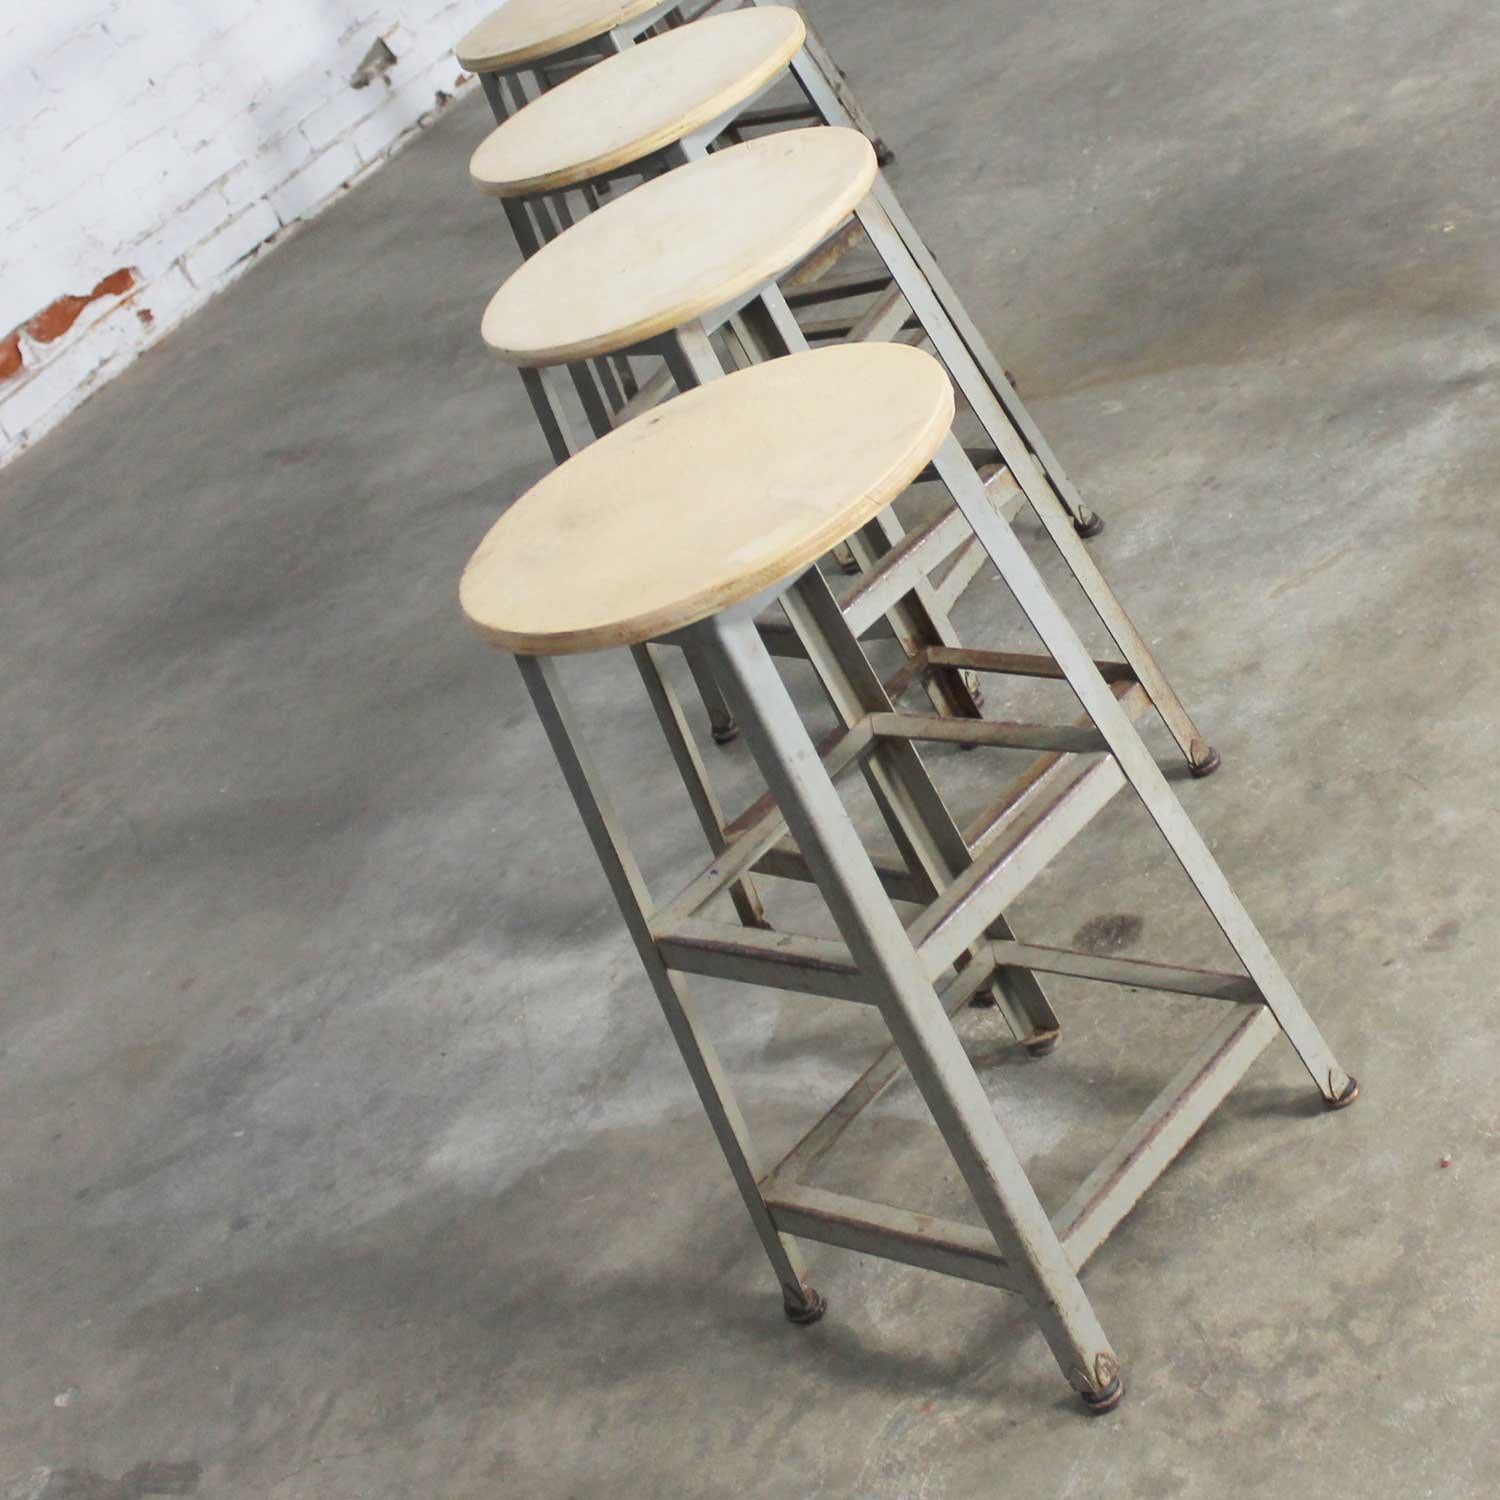 distressed wood stools